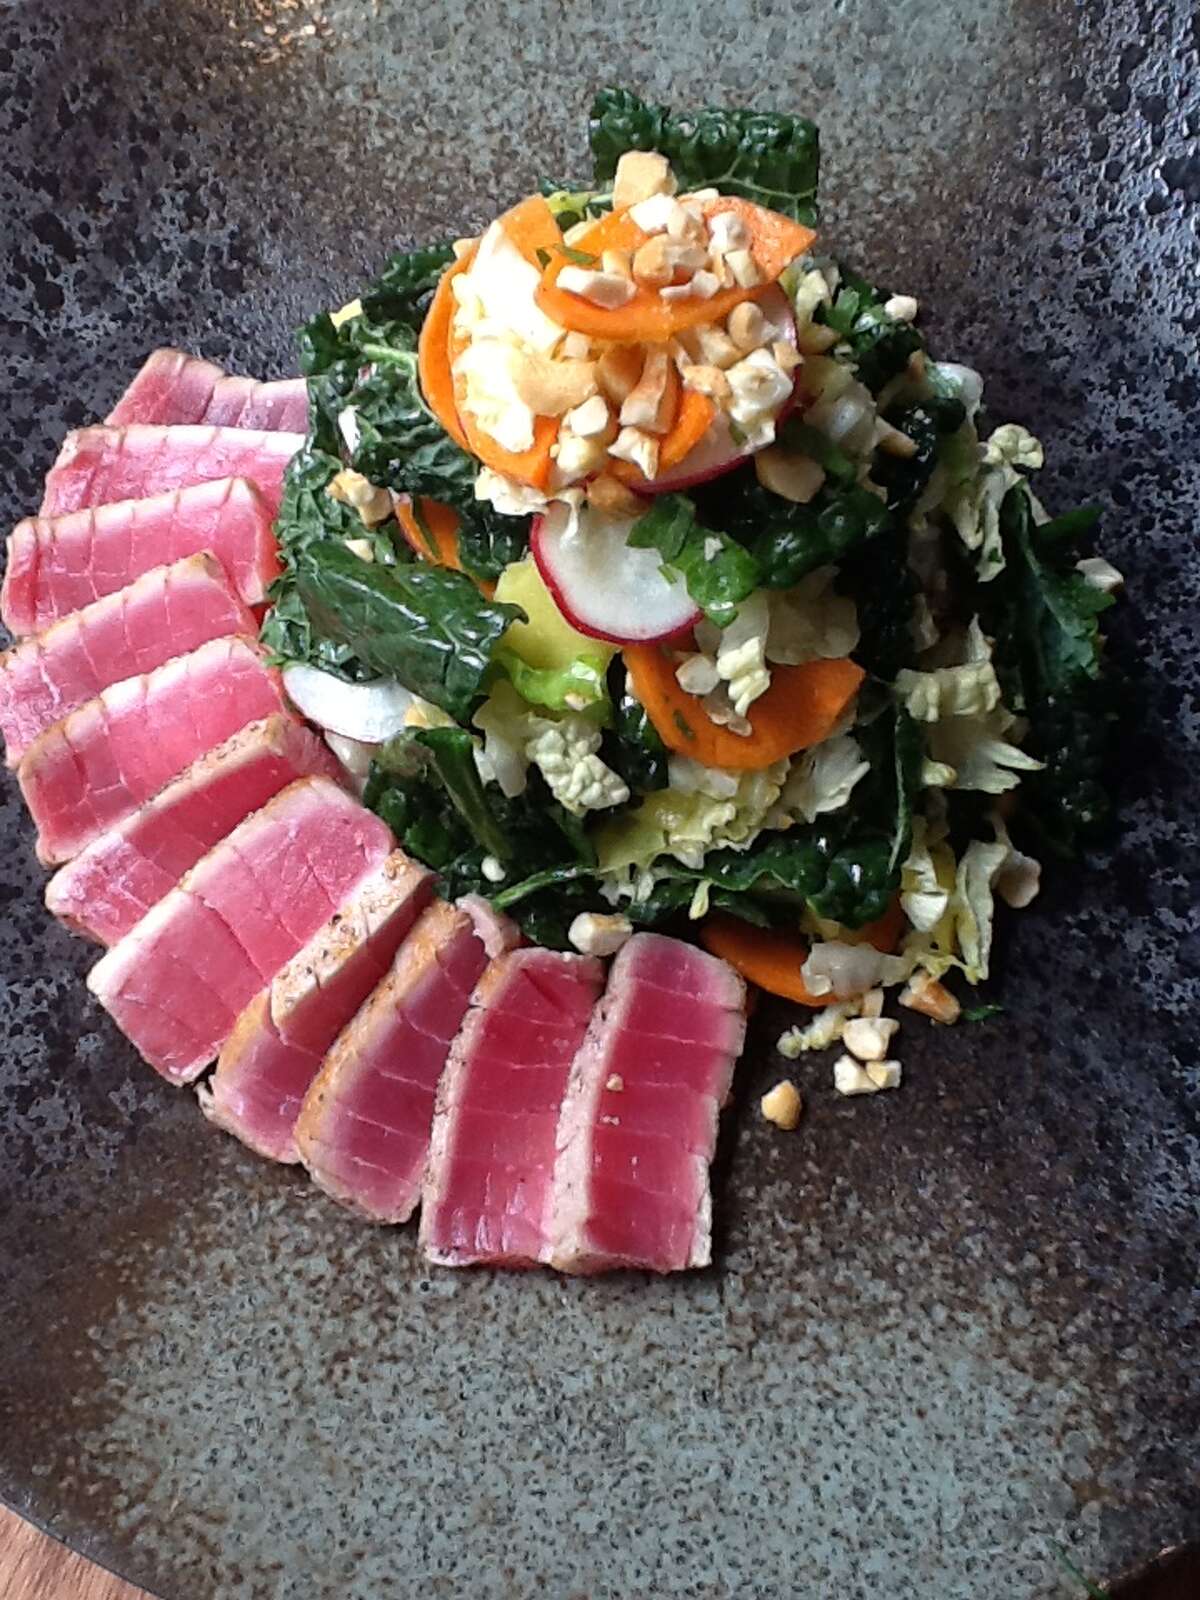 Seared tuna and kale salad from Fusion Taco